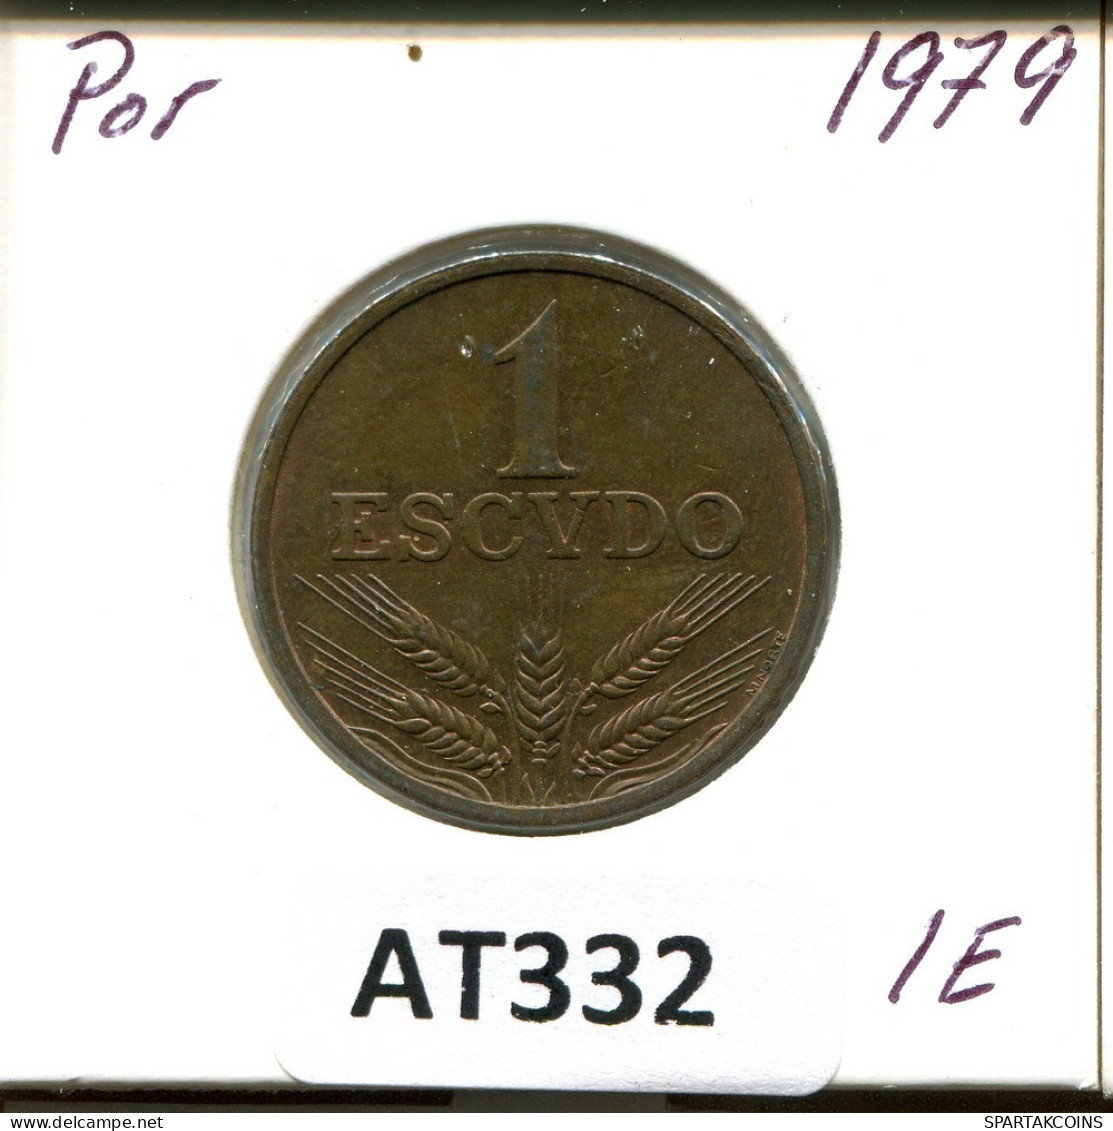 1 ESCUDO 1979 PORTUGAL Coin #AT332.U.A - Portugal